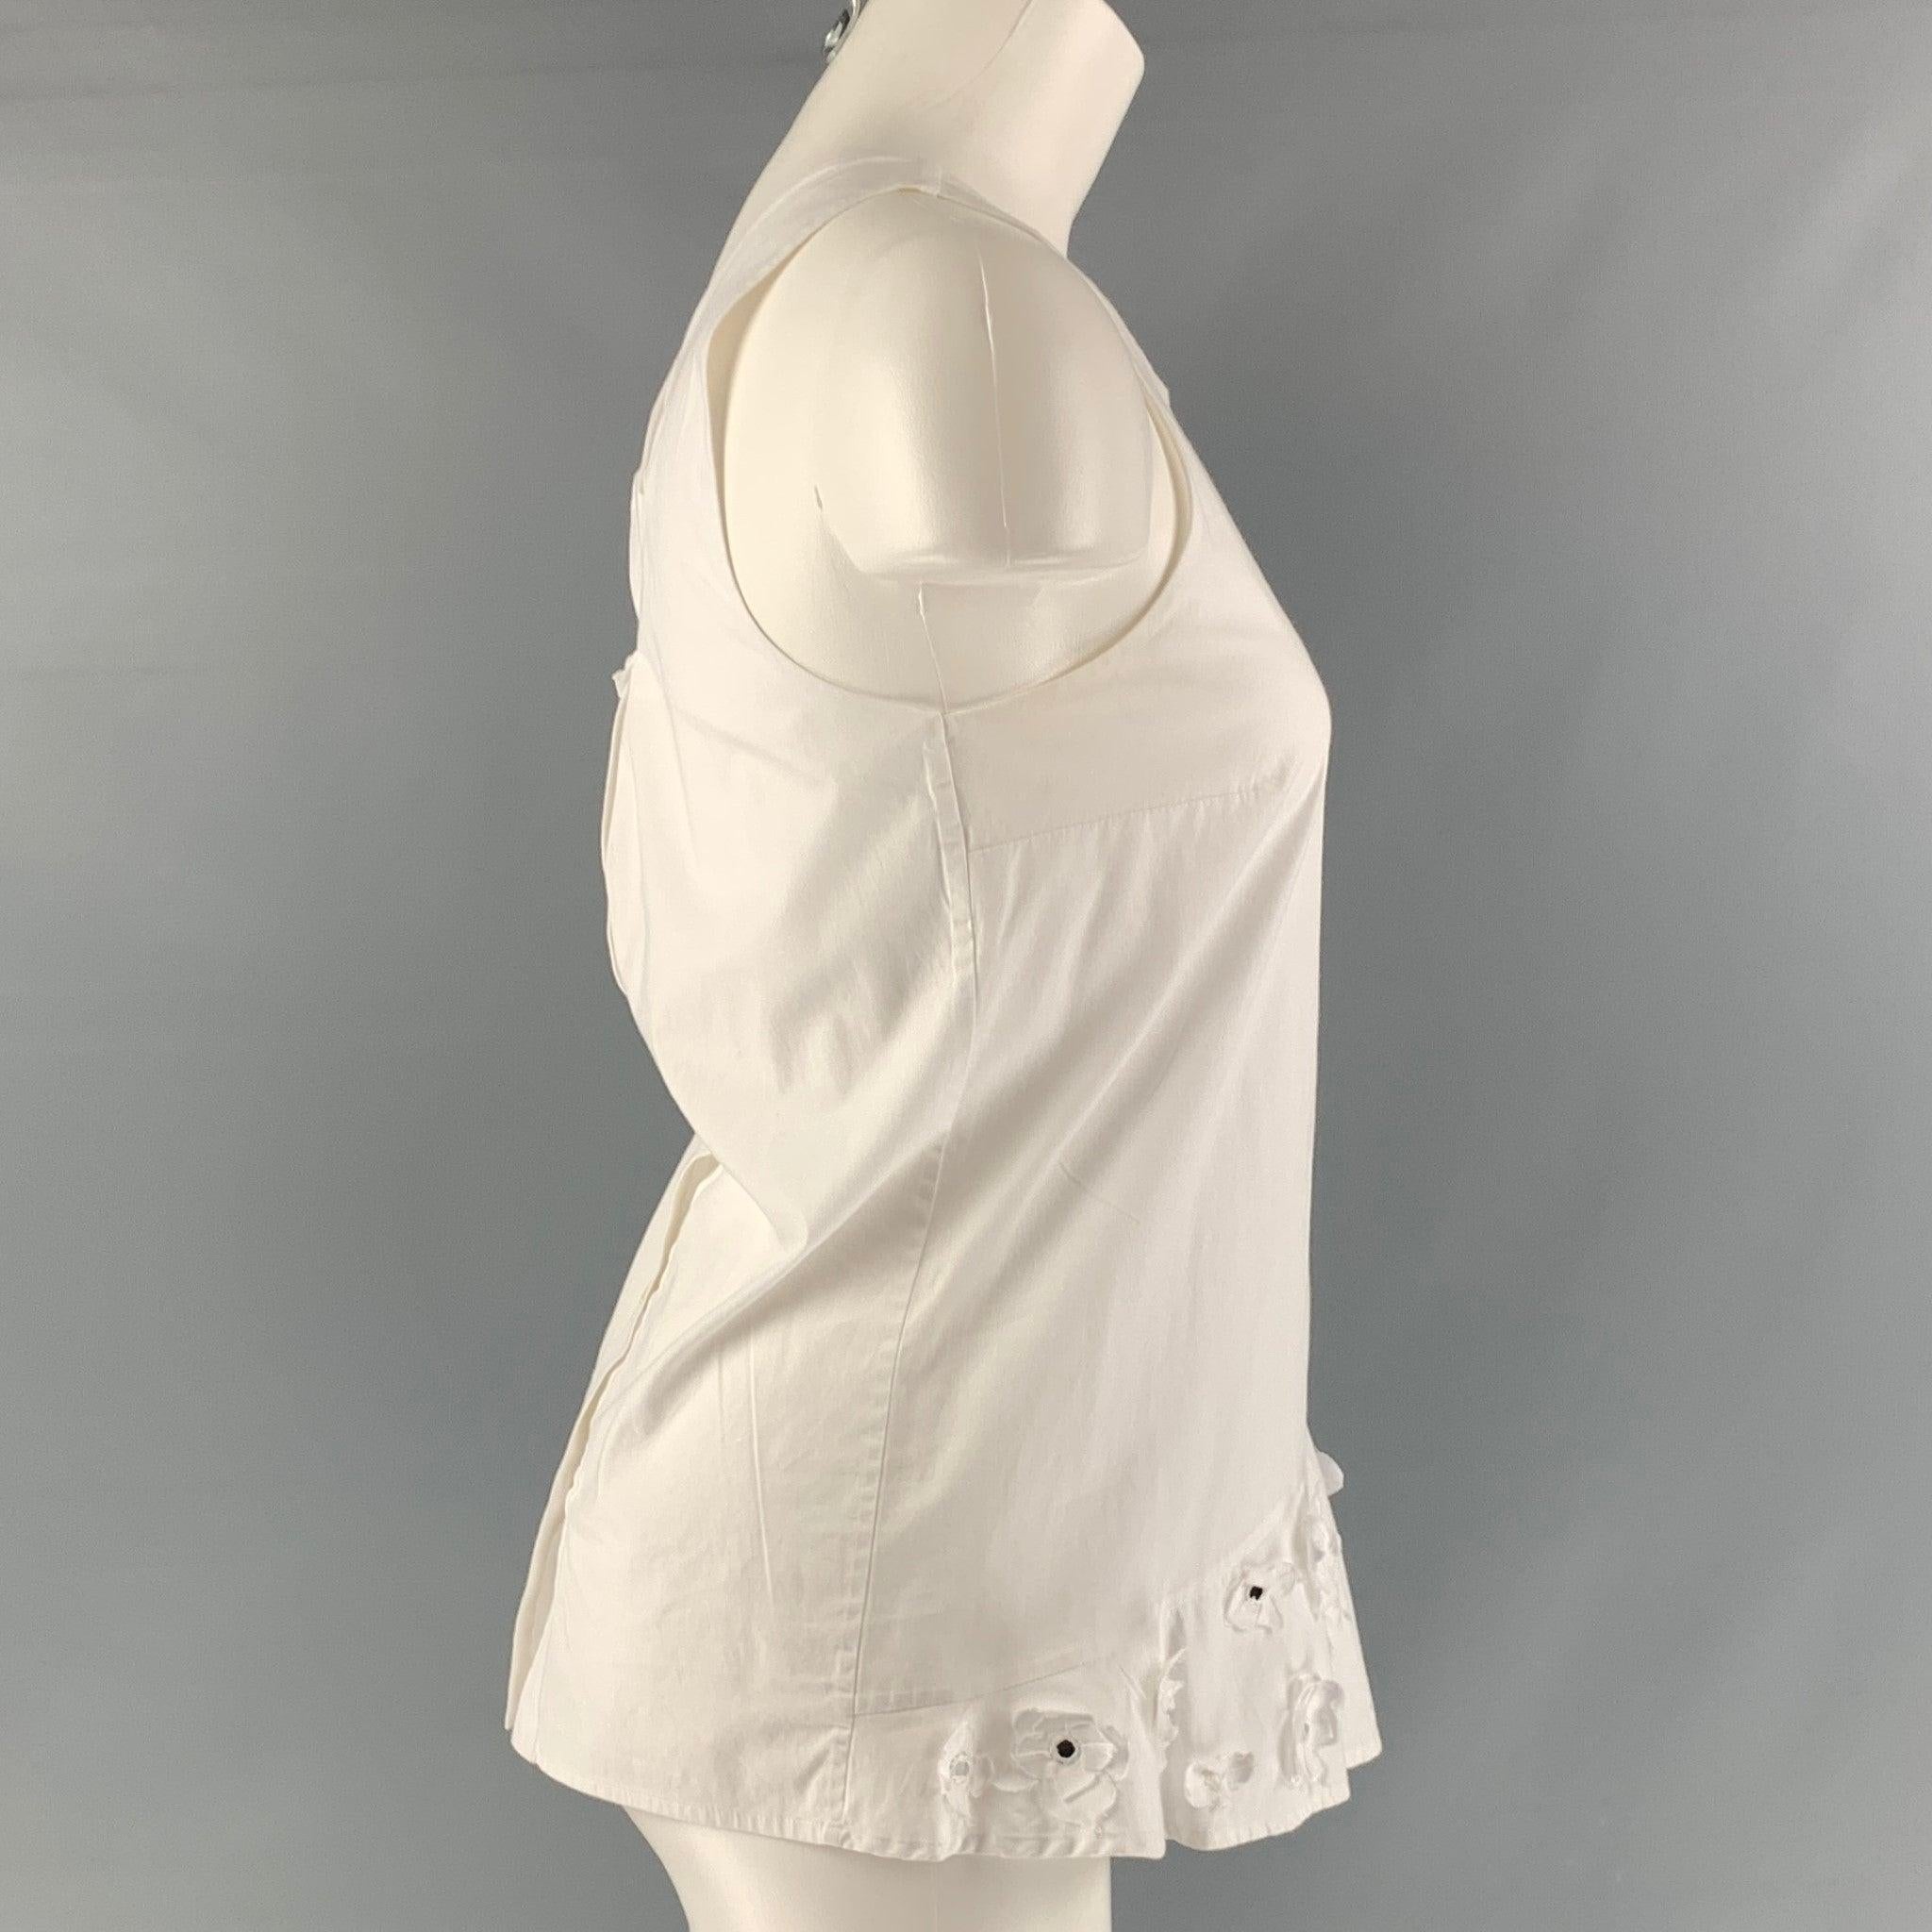 THAKOON ärmellose Bluse aus weißer Baumwoll-Popeline, ärmellos und mit Blumendetail am vorderen Saum. Sehr guter, gebrauchter Zustand.  

Markiert:   2 

Abmessungen: 
 
Schultern: 10,5 Zoll Oberweite: 33 Zoll Länge: 23 Zoll 

  
  
 
Sui